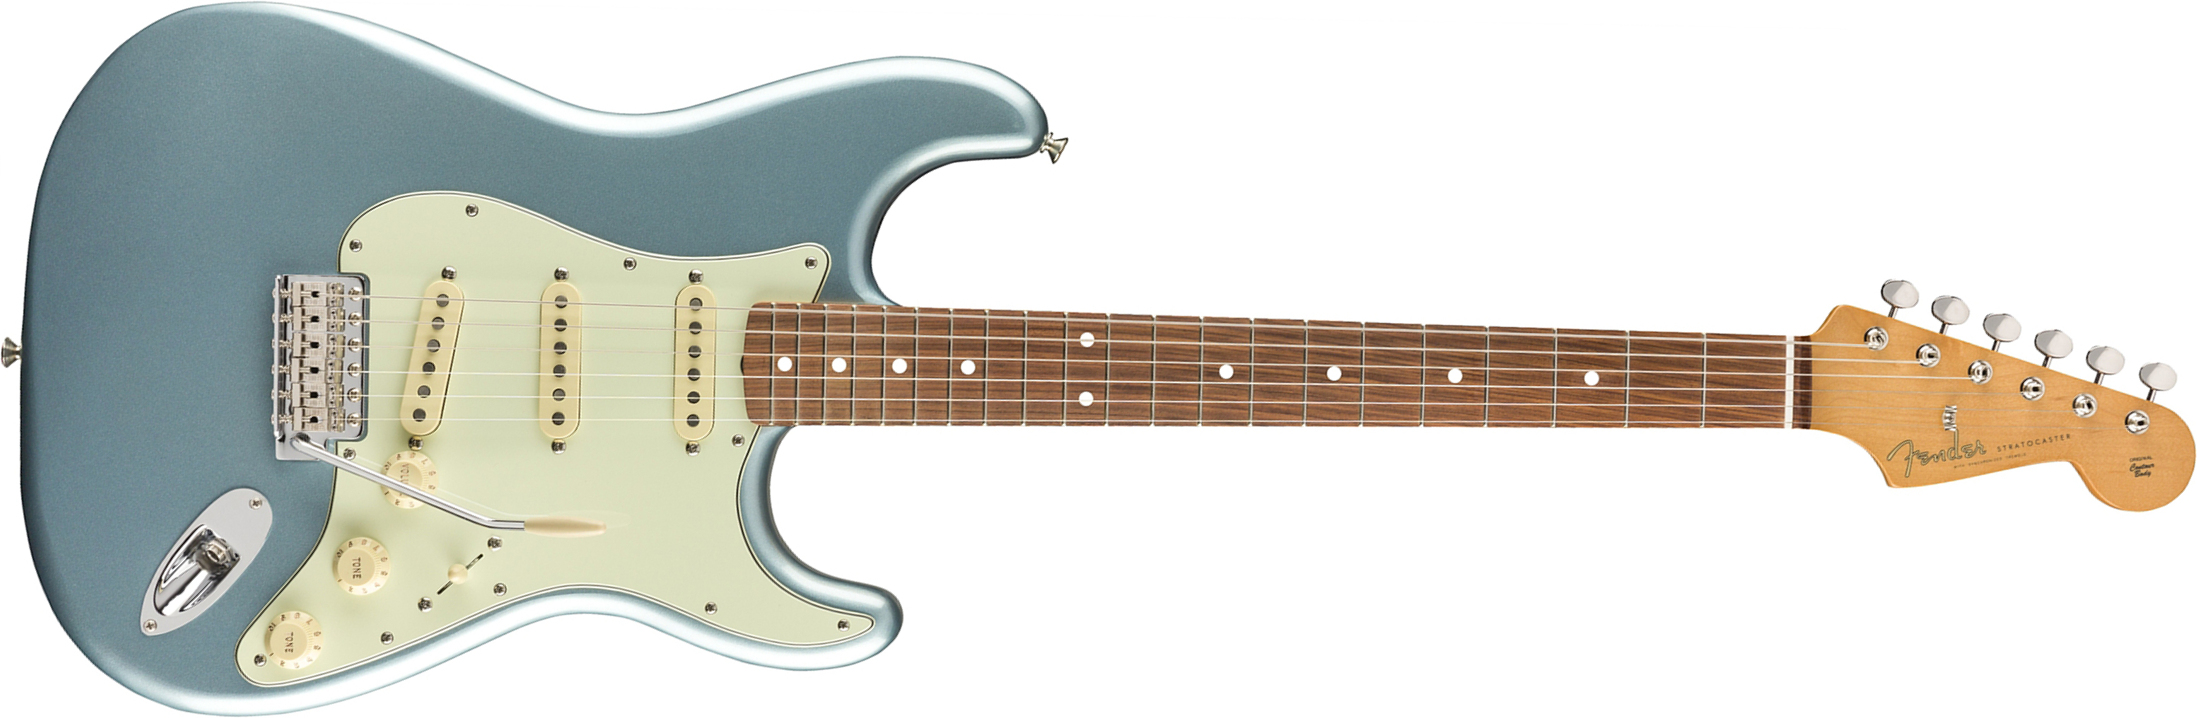 Fender Strat 60s Vintera Vintage Mex Pf - Ice Blue Metallic - Guitare Électrique Forme Str - Main picture